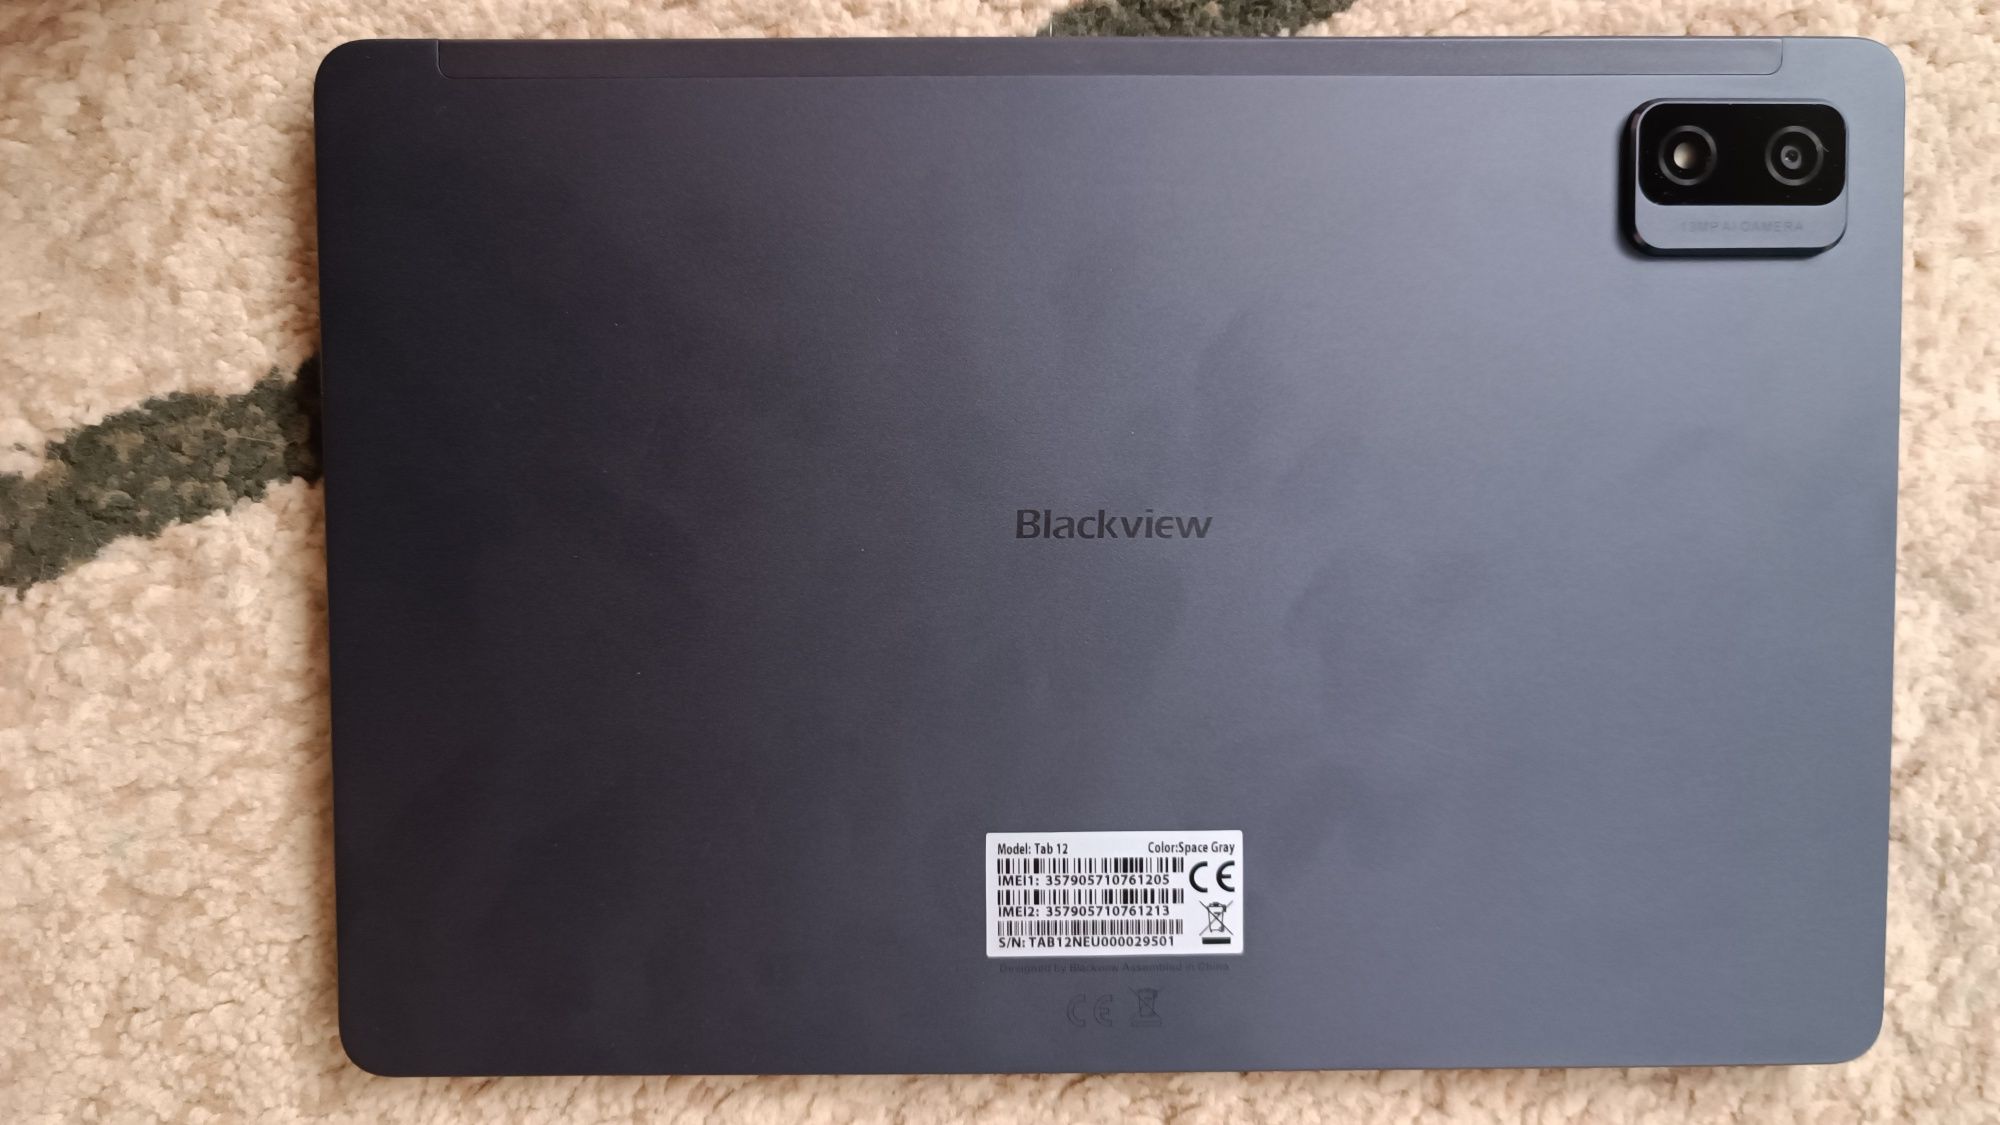 Продам Планшет Blackview Tab 12 10.1 дюйм 4 Гб/64 Гб

Планшет в идеаль